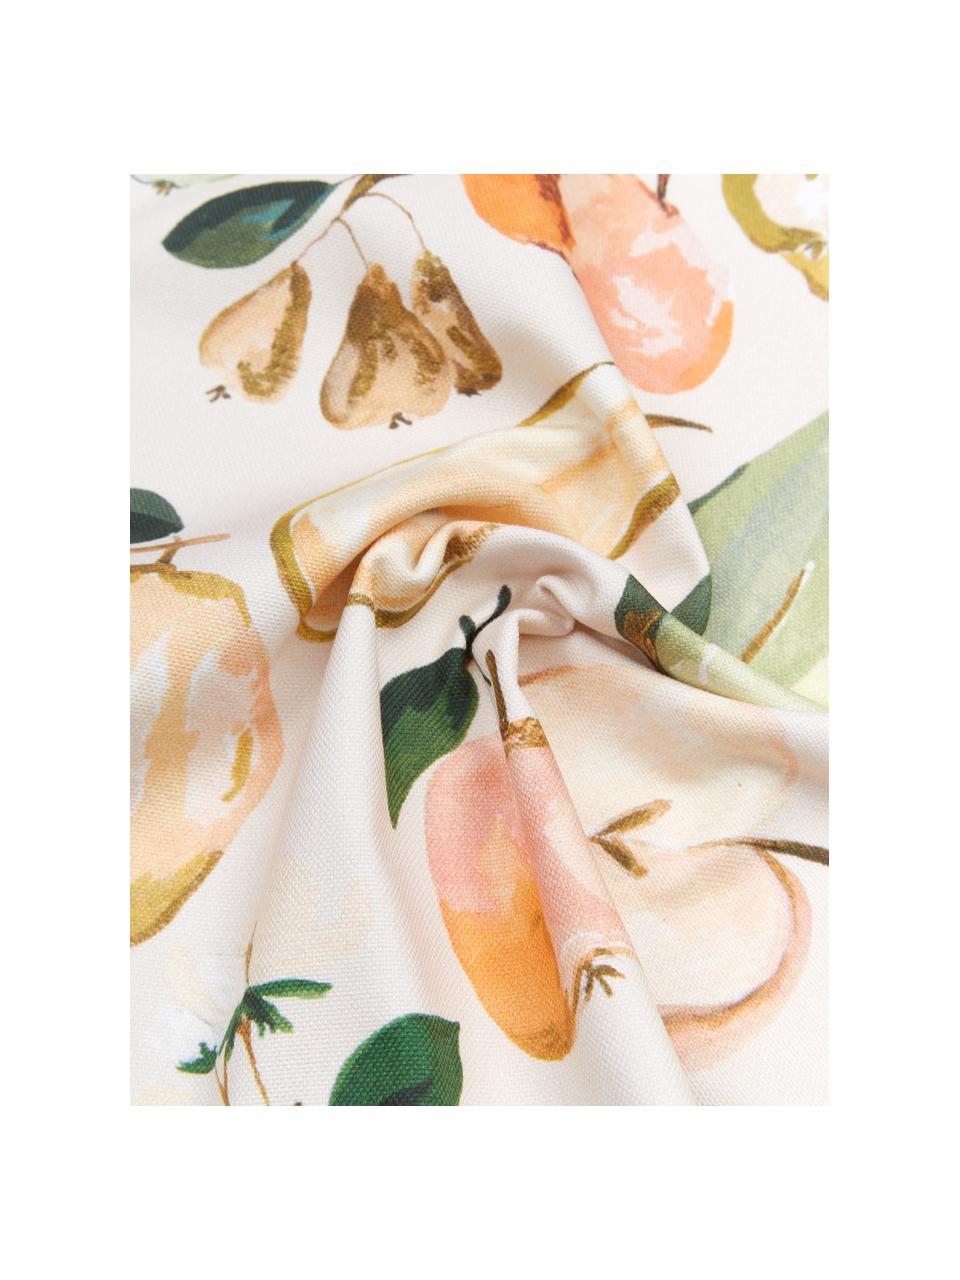 Design kussenhoes Fruits van Candice Gray, 100% katoen, GOTS gecertificeerd, Multicolour, B 45 x L 45 cm